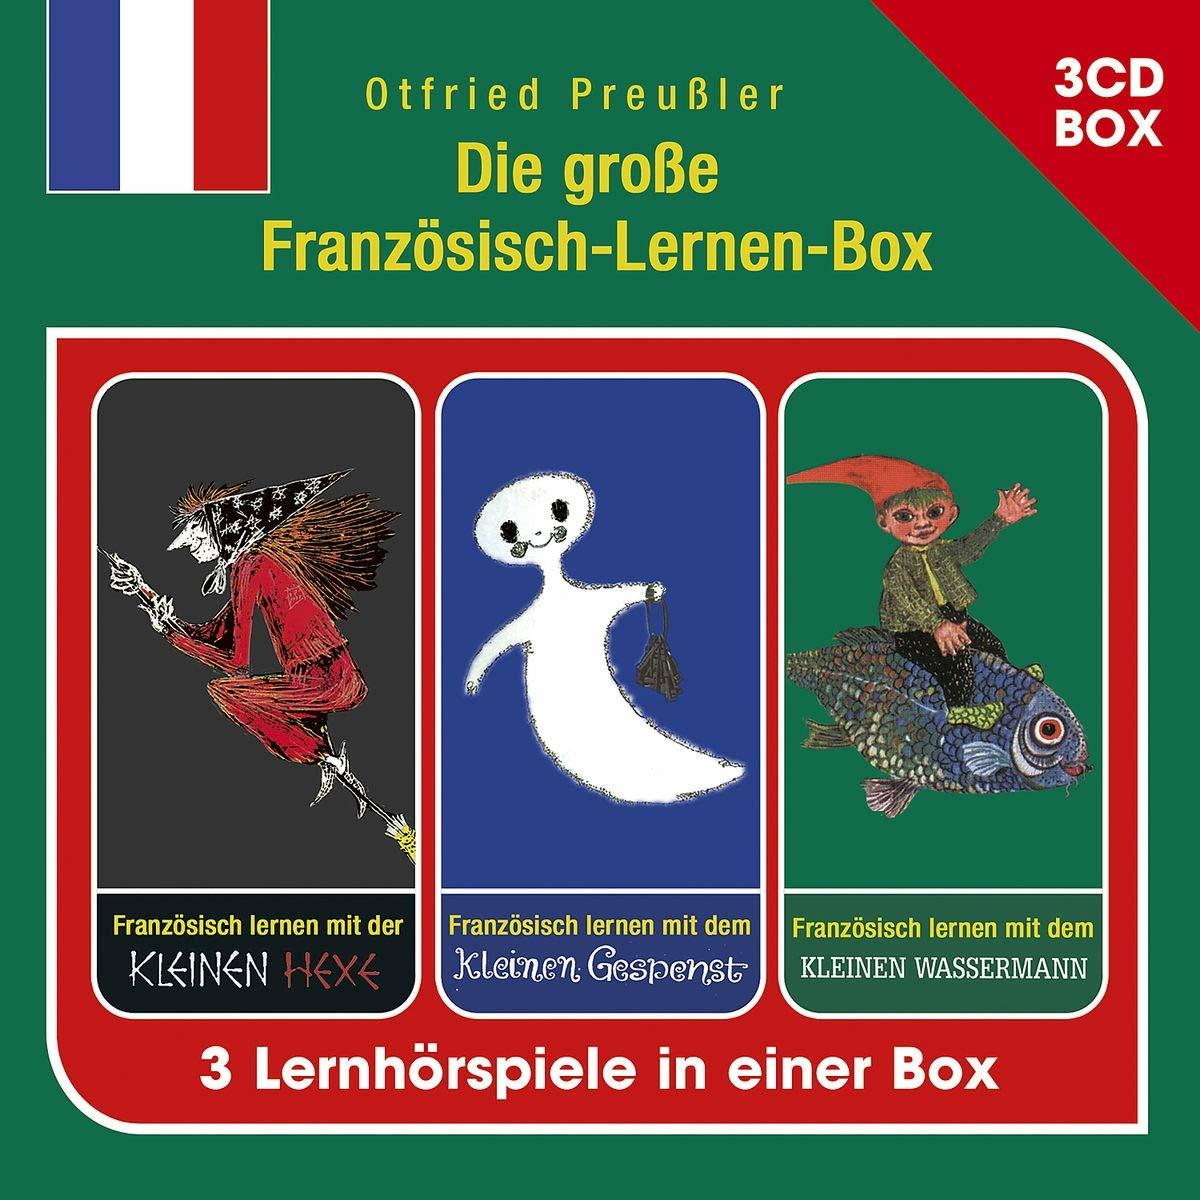 (CD) Französisch-Lernen-Box Die (3-CD Preussler Hspbox) - Große Otfried -